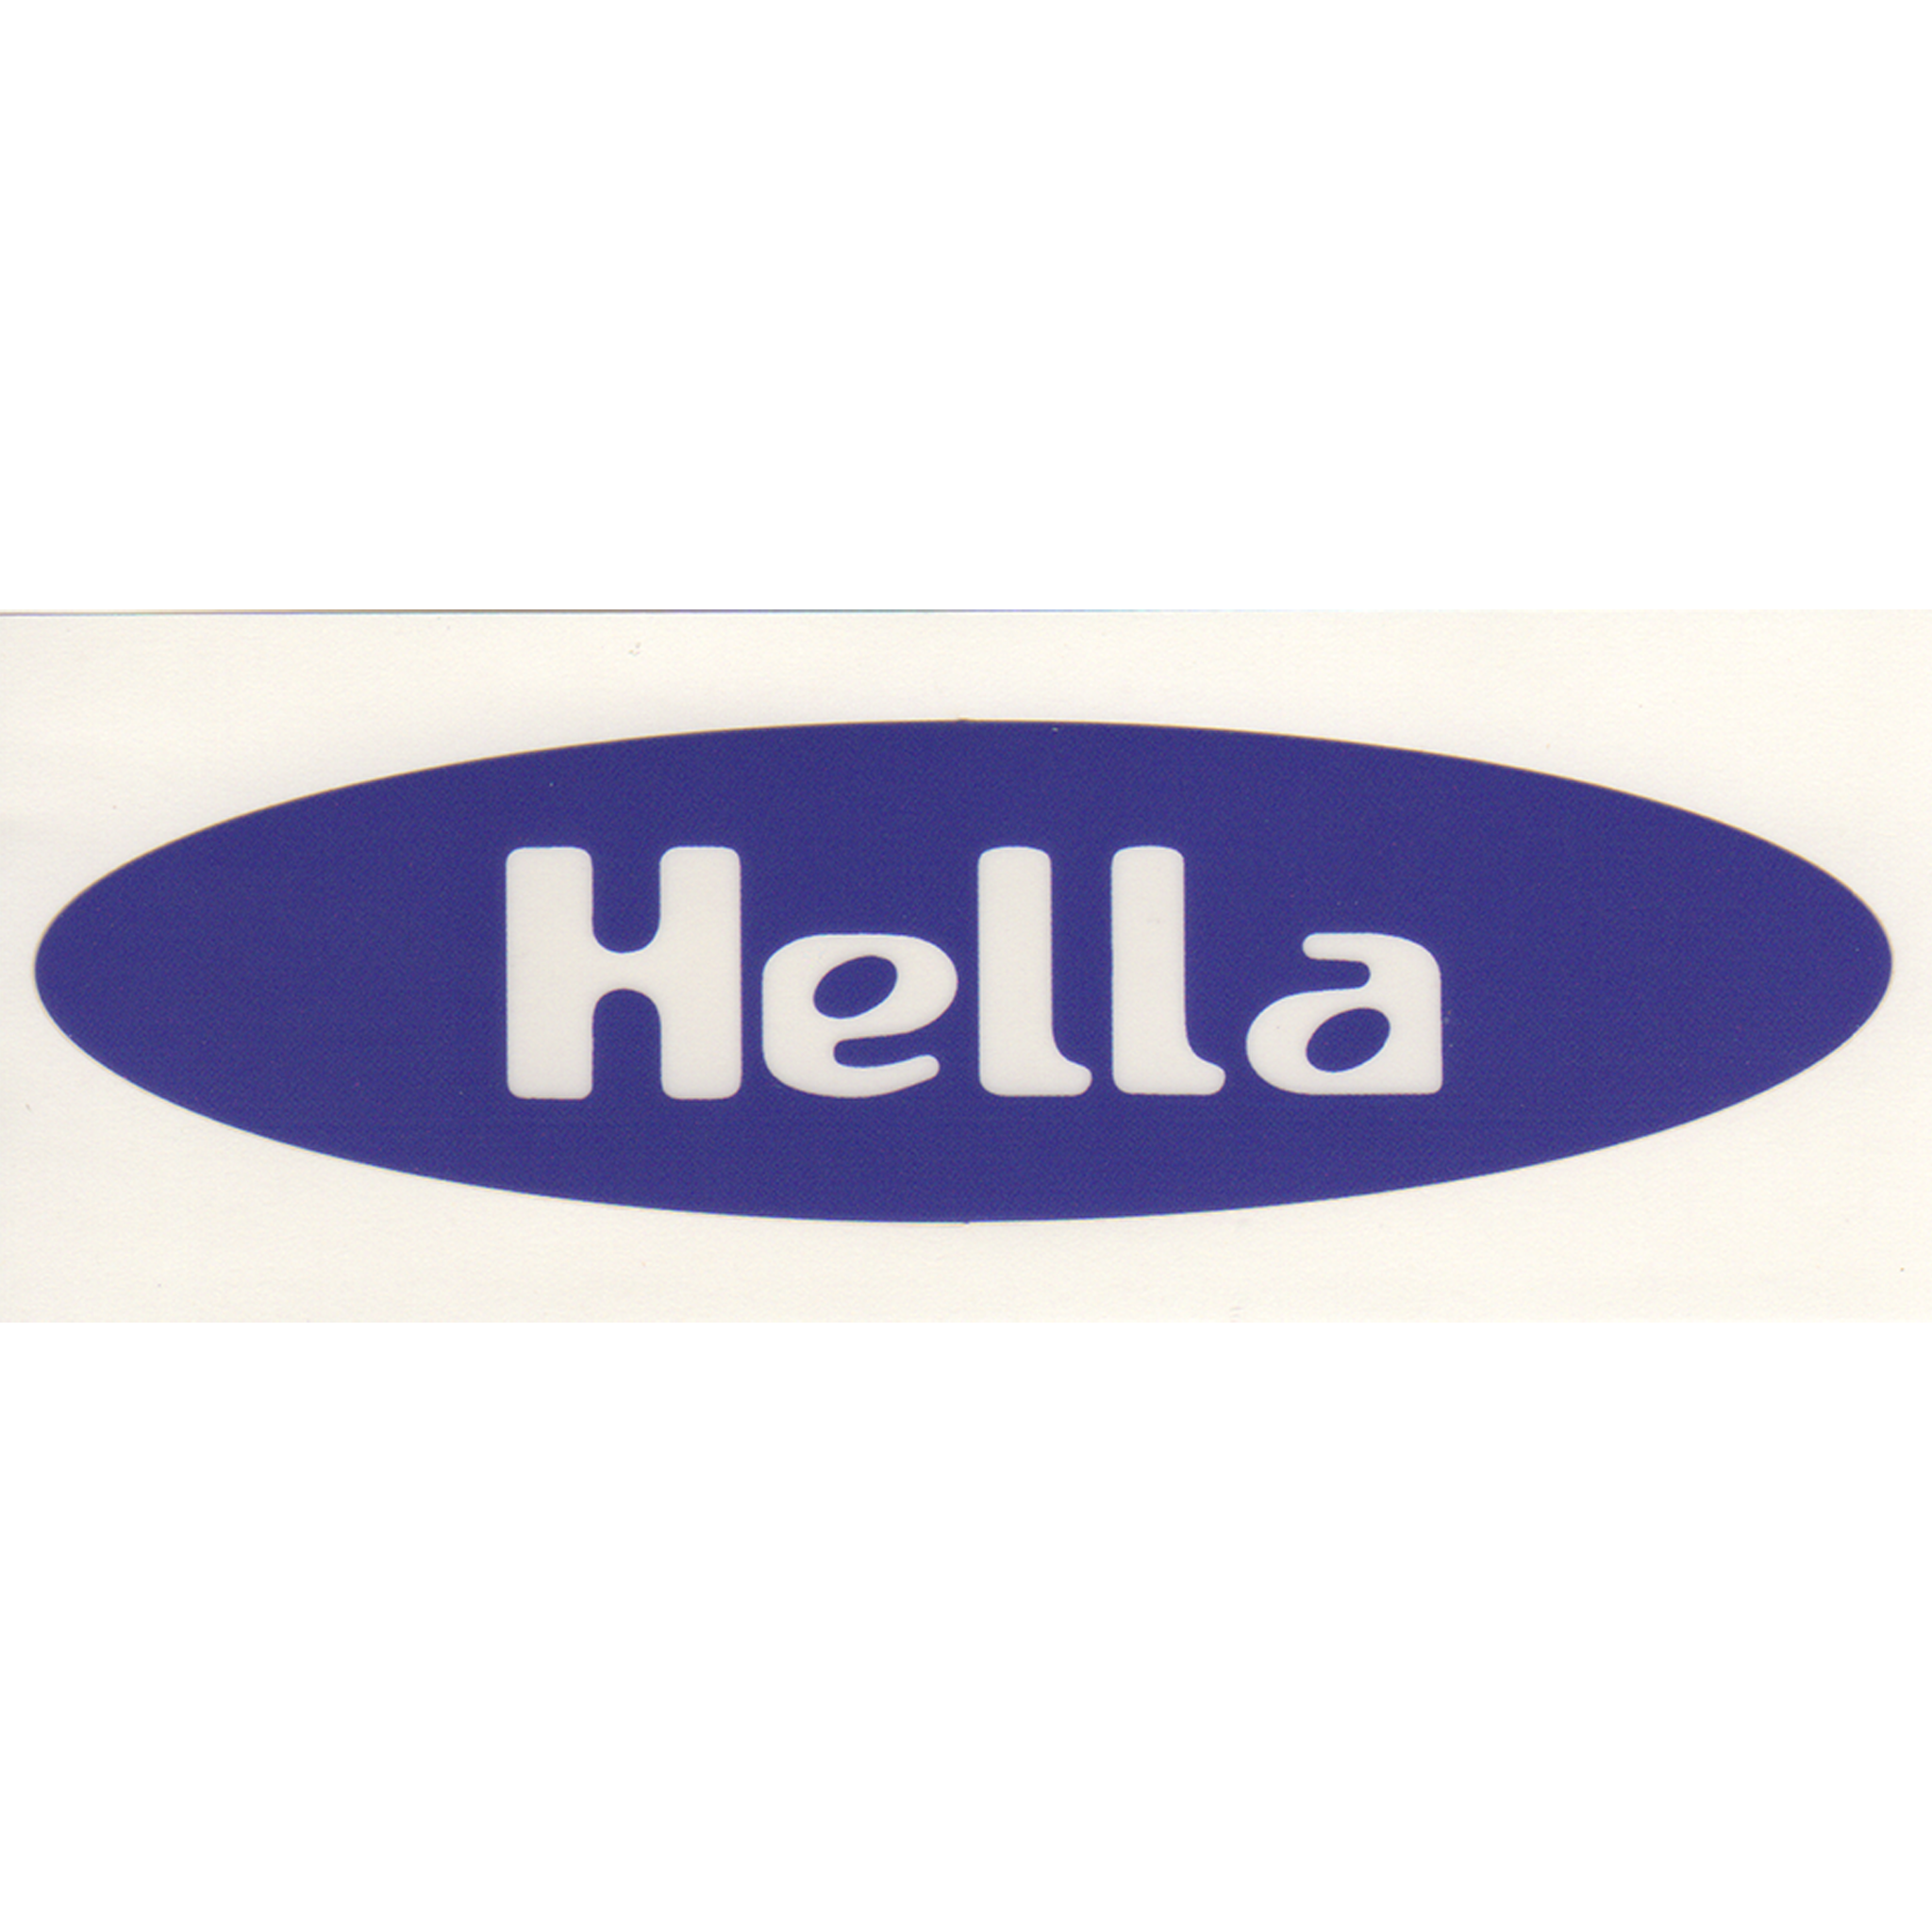 Hella Sharp Sticker {10-PACK}